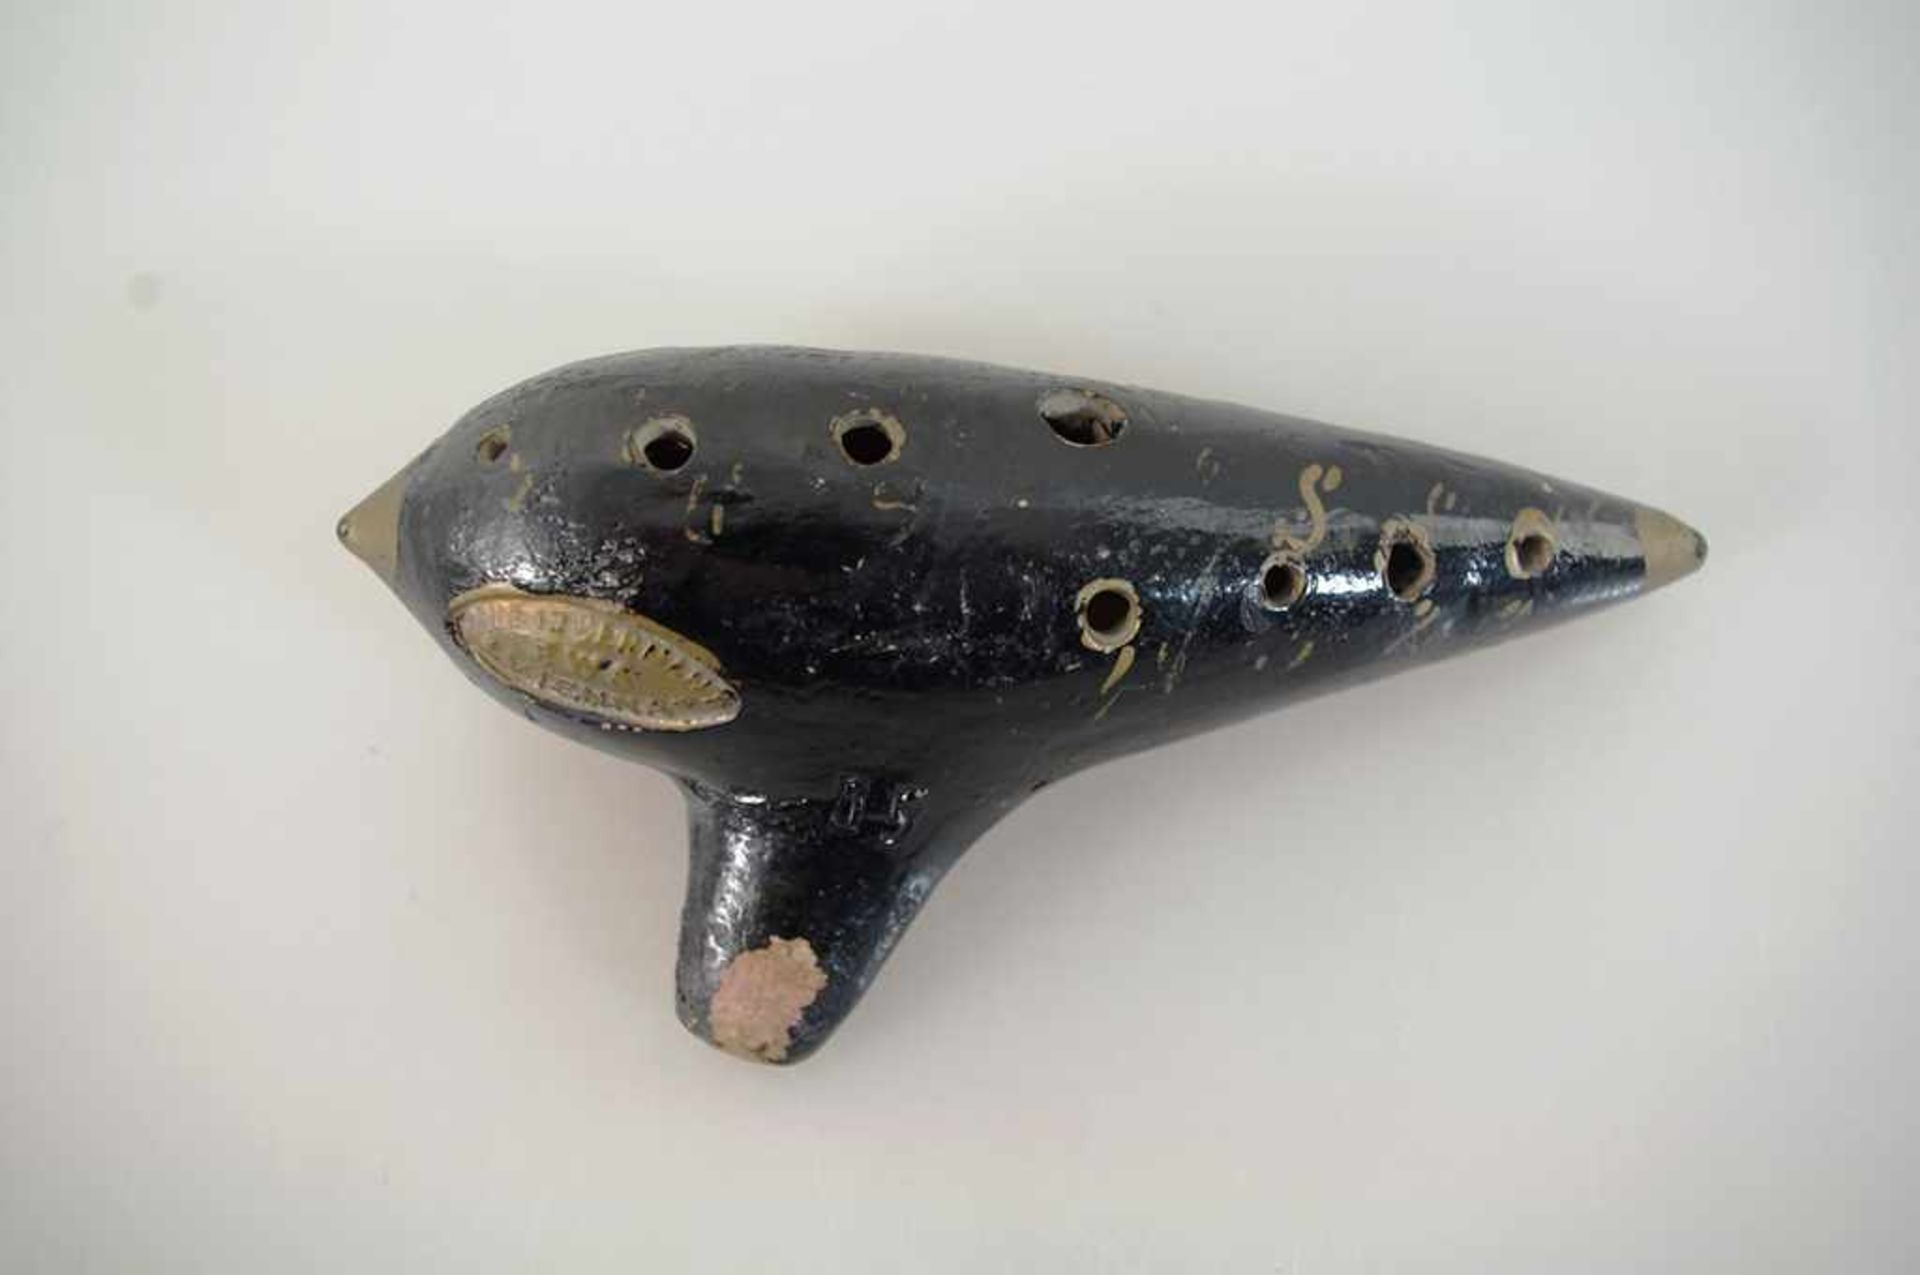 Ocarina (Gefäßflöte), Tonkorpus, gem. Made in Germany EWA Vienna, Gebrauchsspuren, l. ca. 14cm